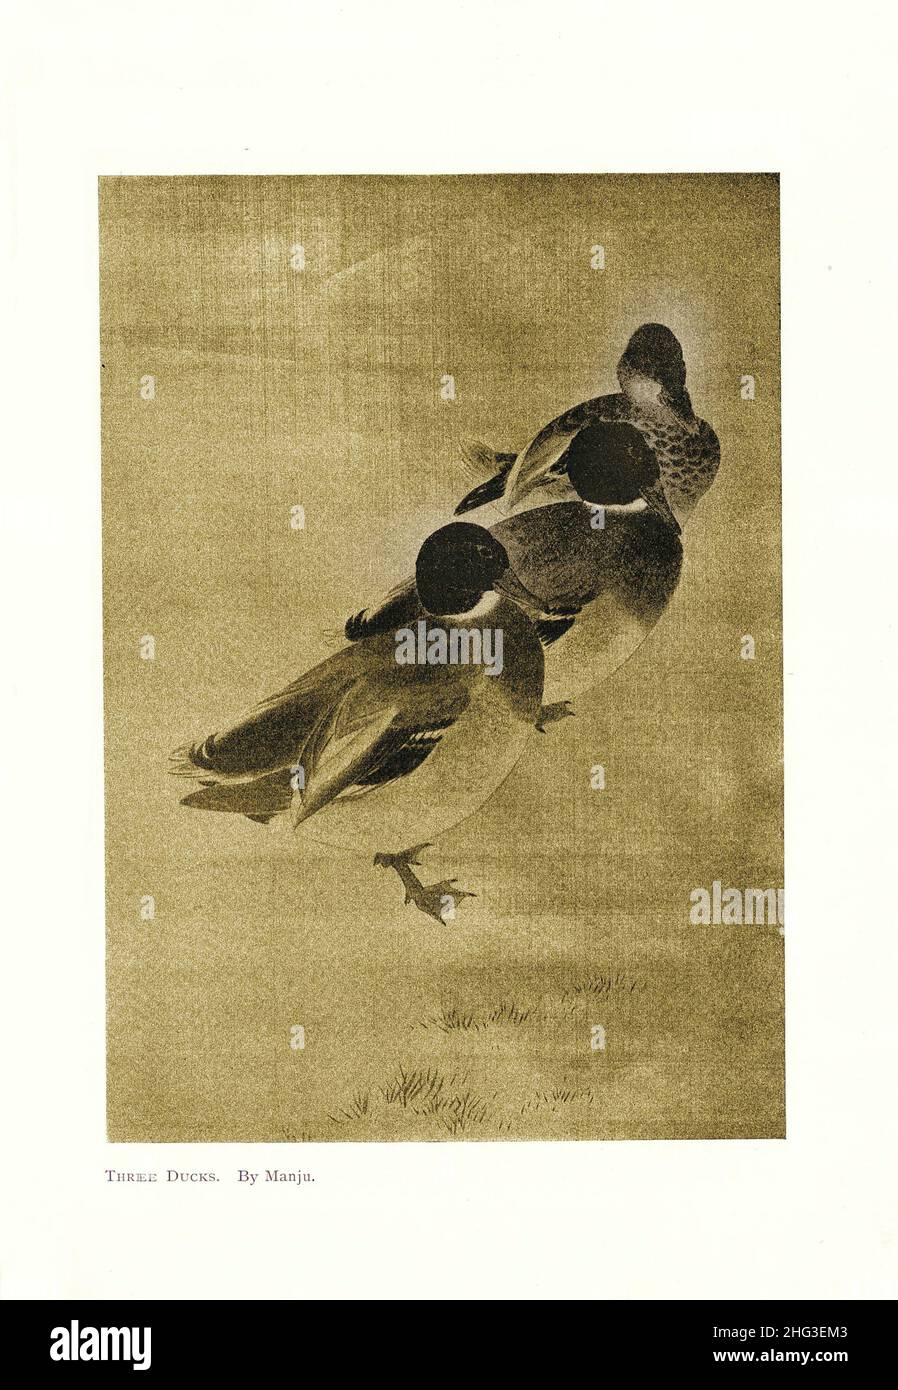 Peinture médiévale chinoise de trois canards.Par Manju.Reproduction de l'illustration du livre 1912 Banque D'Images